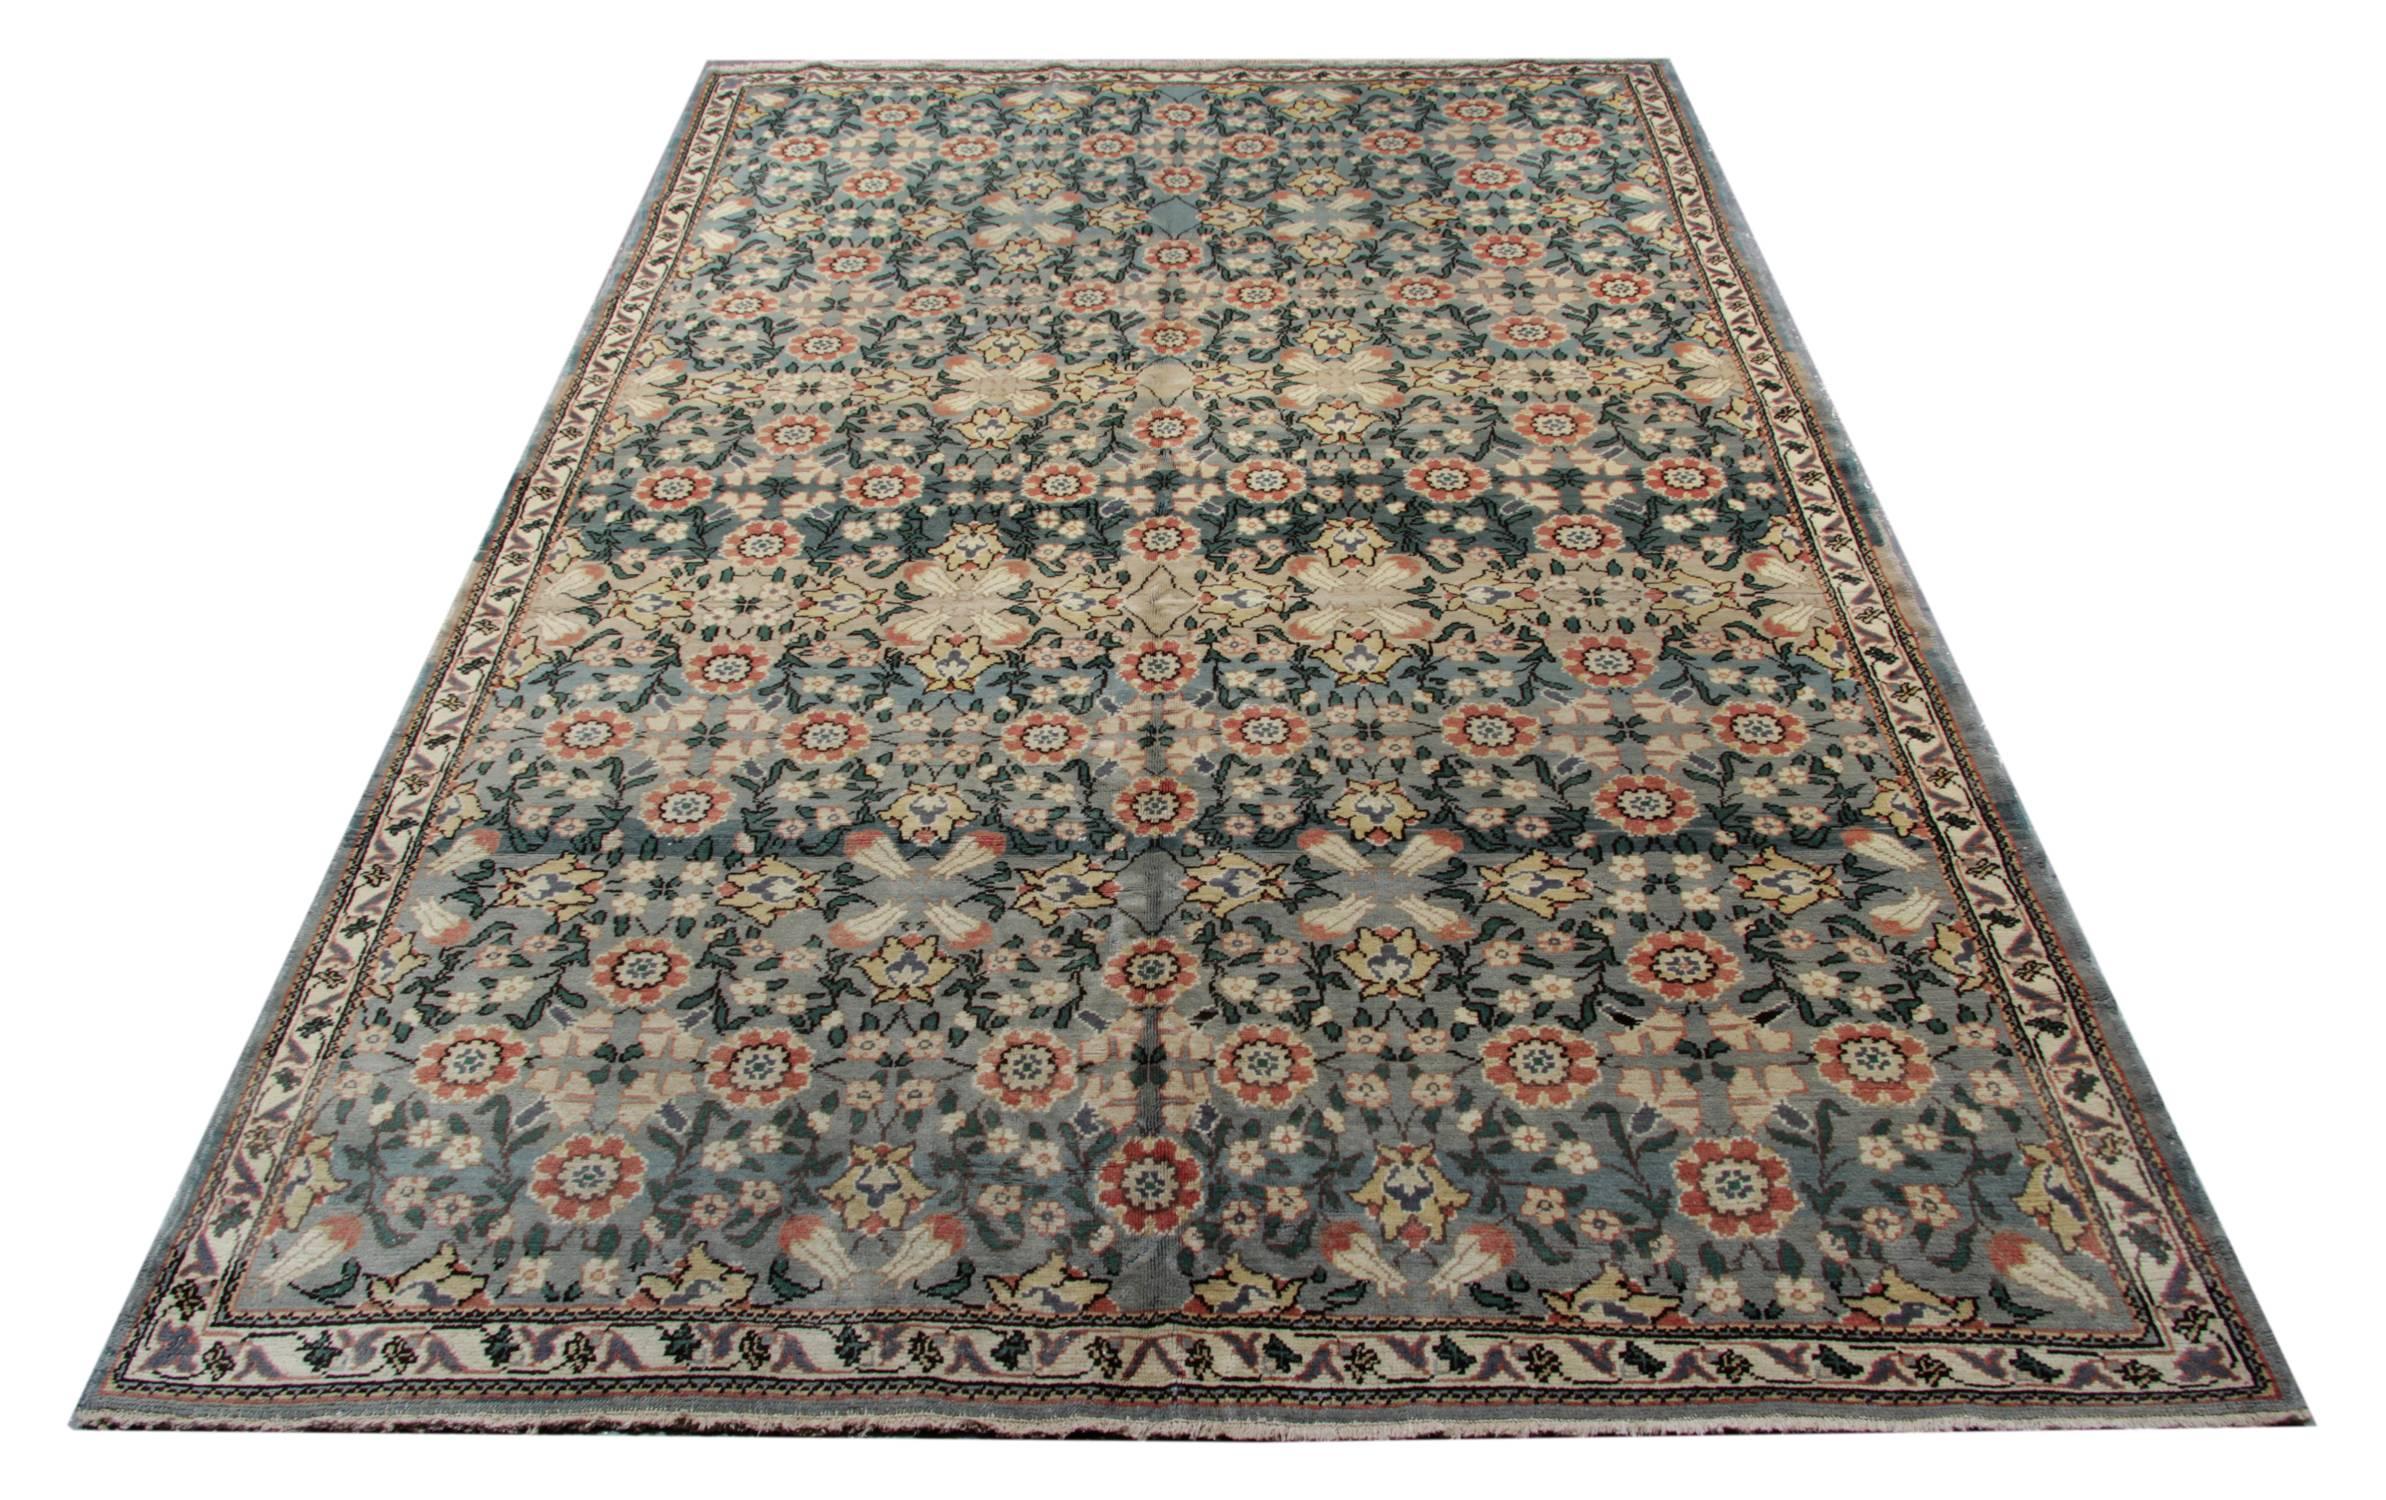 Dieser handgefertigte Teppich ist ein alter türkischer Ushak Oushak Teppich, ca. 1950 und ist ein gemusterter Teppich mit einem all-over floralen Design 100% natürliche Teppiche aus organischen Farbstoffen in ausgezeichnetem Zustand. Dieser graue